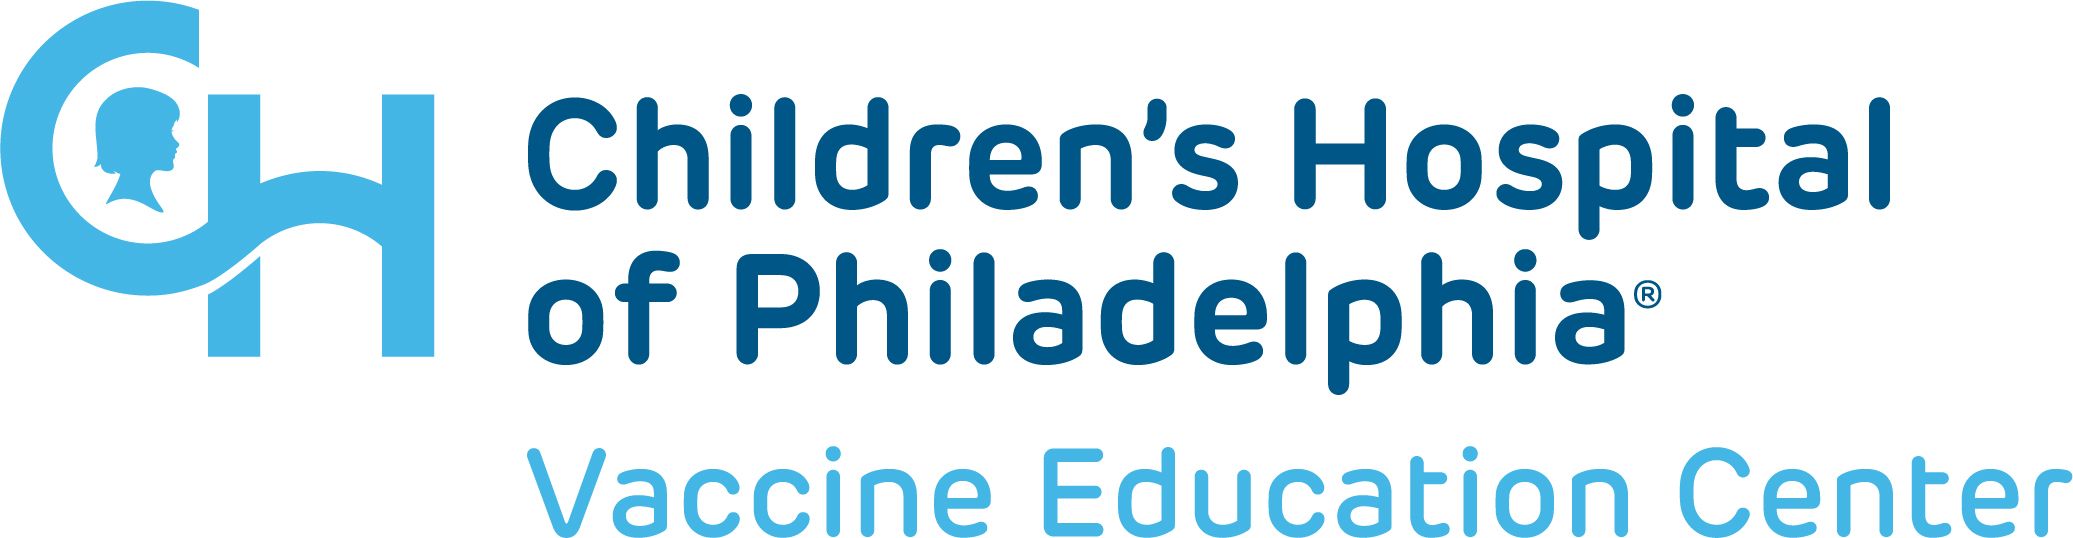 Children’s Hospital of Philadelphia Vaccine Education Center logo